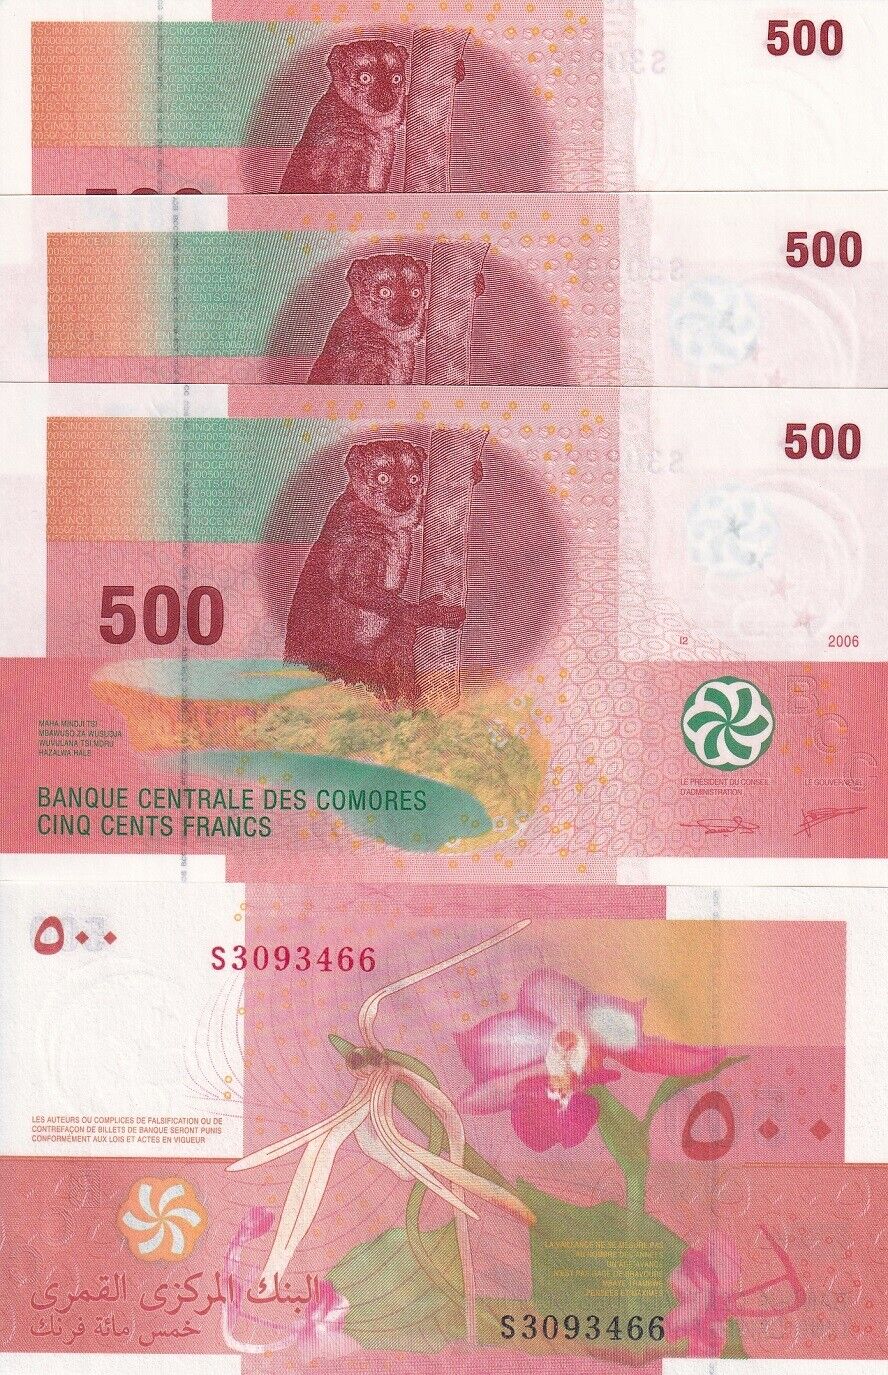 Comoros 500 Francs 2006/2020 P 15 UNC LOT 3 PCS